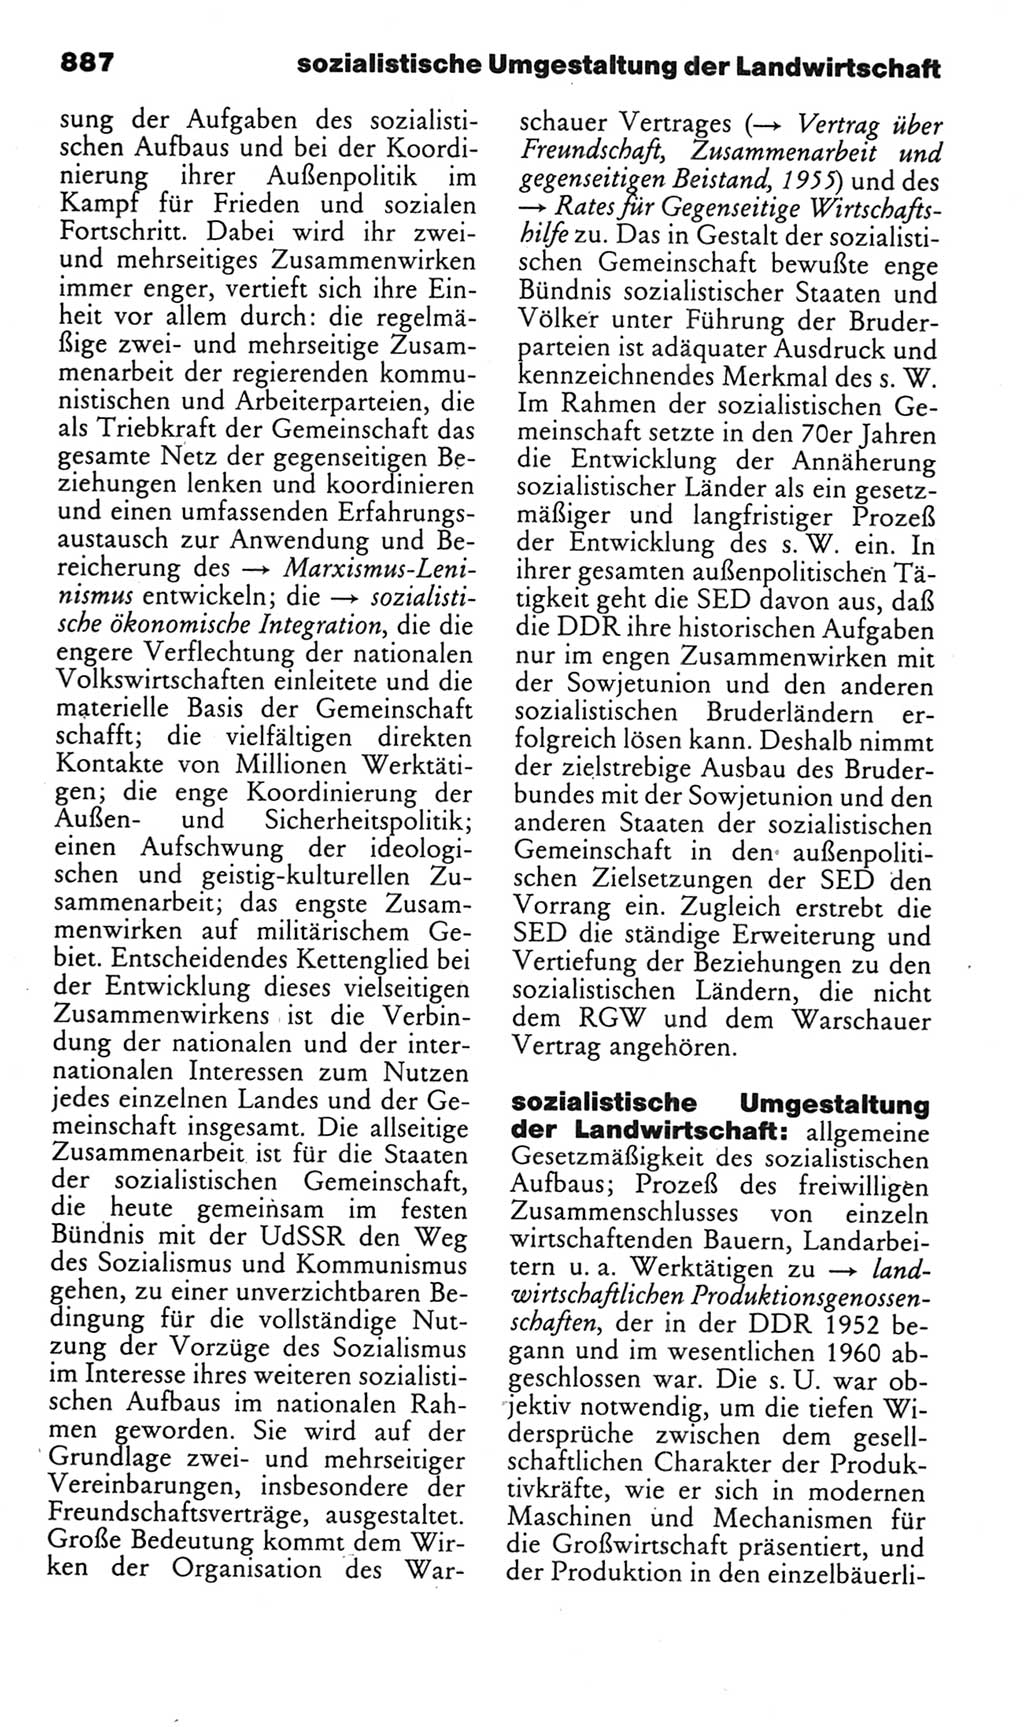 Kleines politisches Wörterbuch [Deutsche Demokratische Republik (DDR)] 1985, Seite 887 (Kl. pol. Wb. DDR 1985, S. 887)